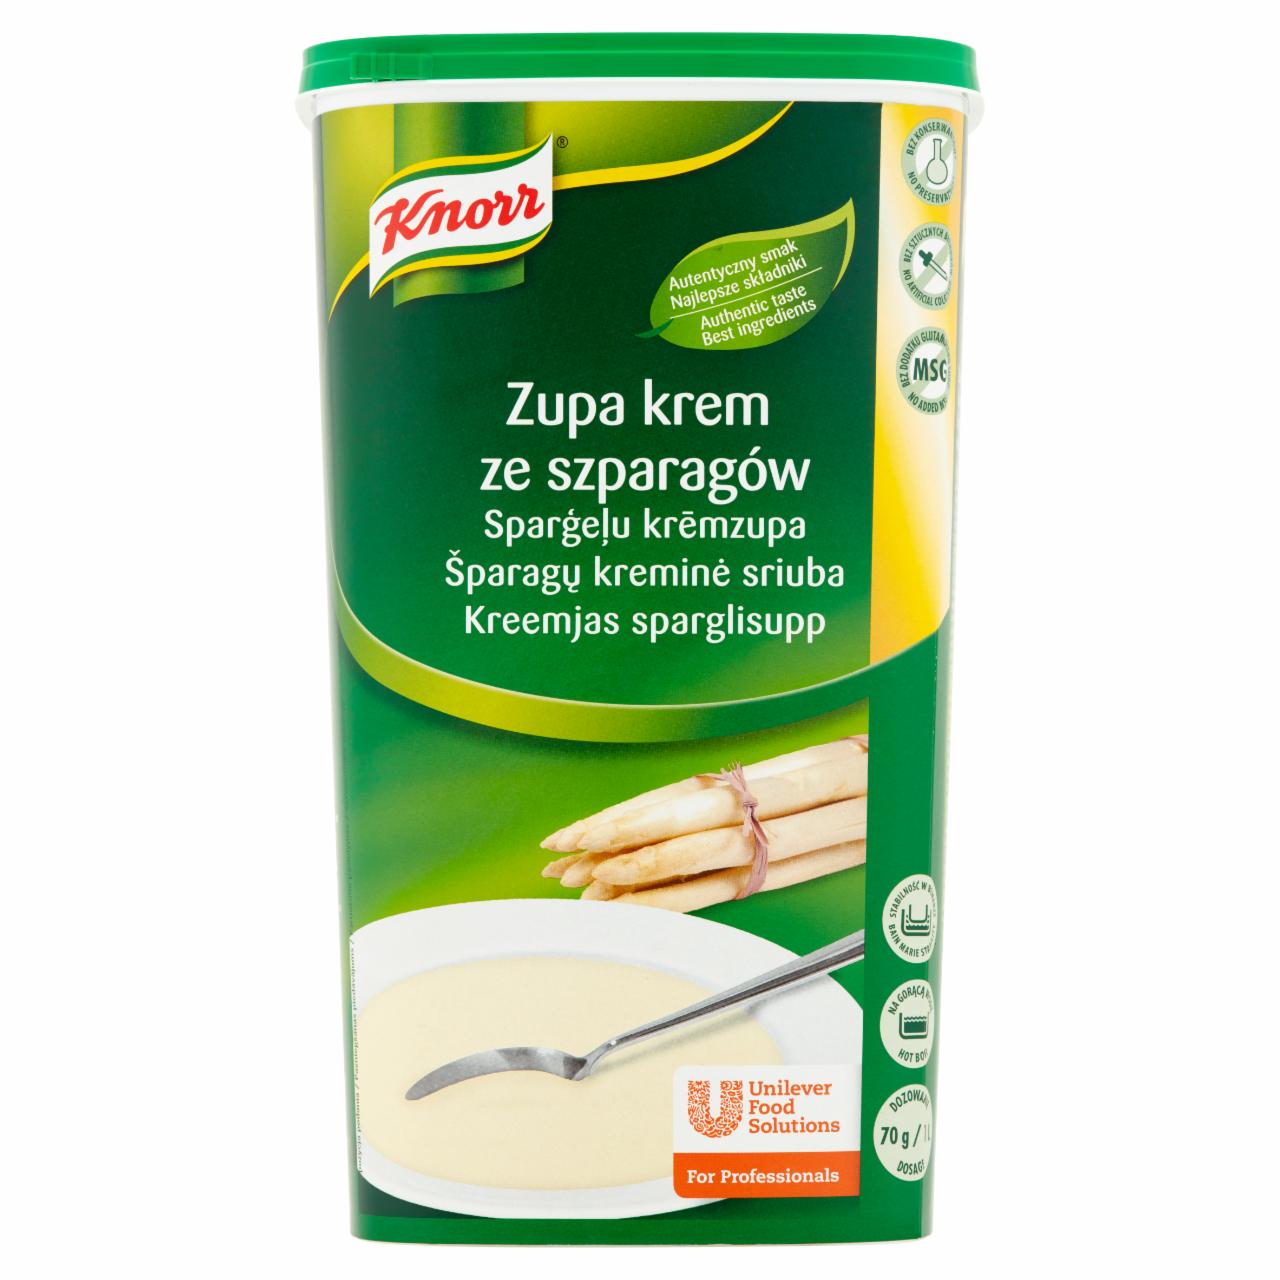 Zdjęcia - Knorr Zupa krem ze szparagów 1,05 kg